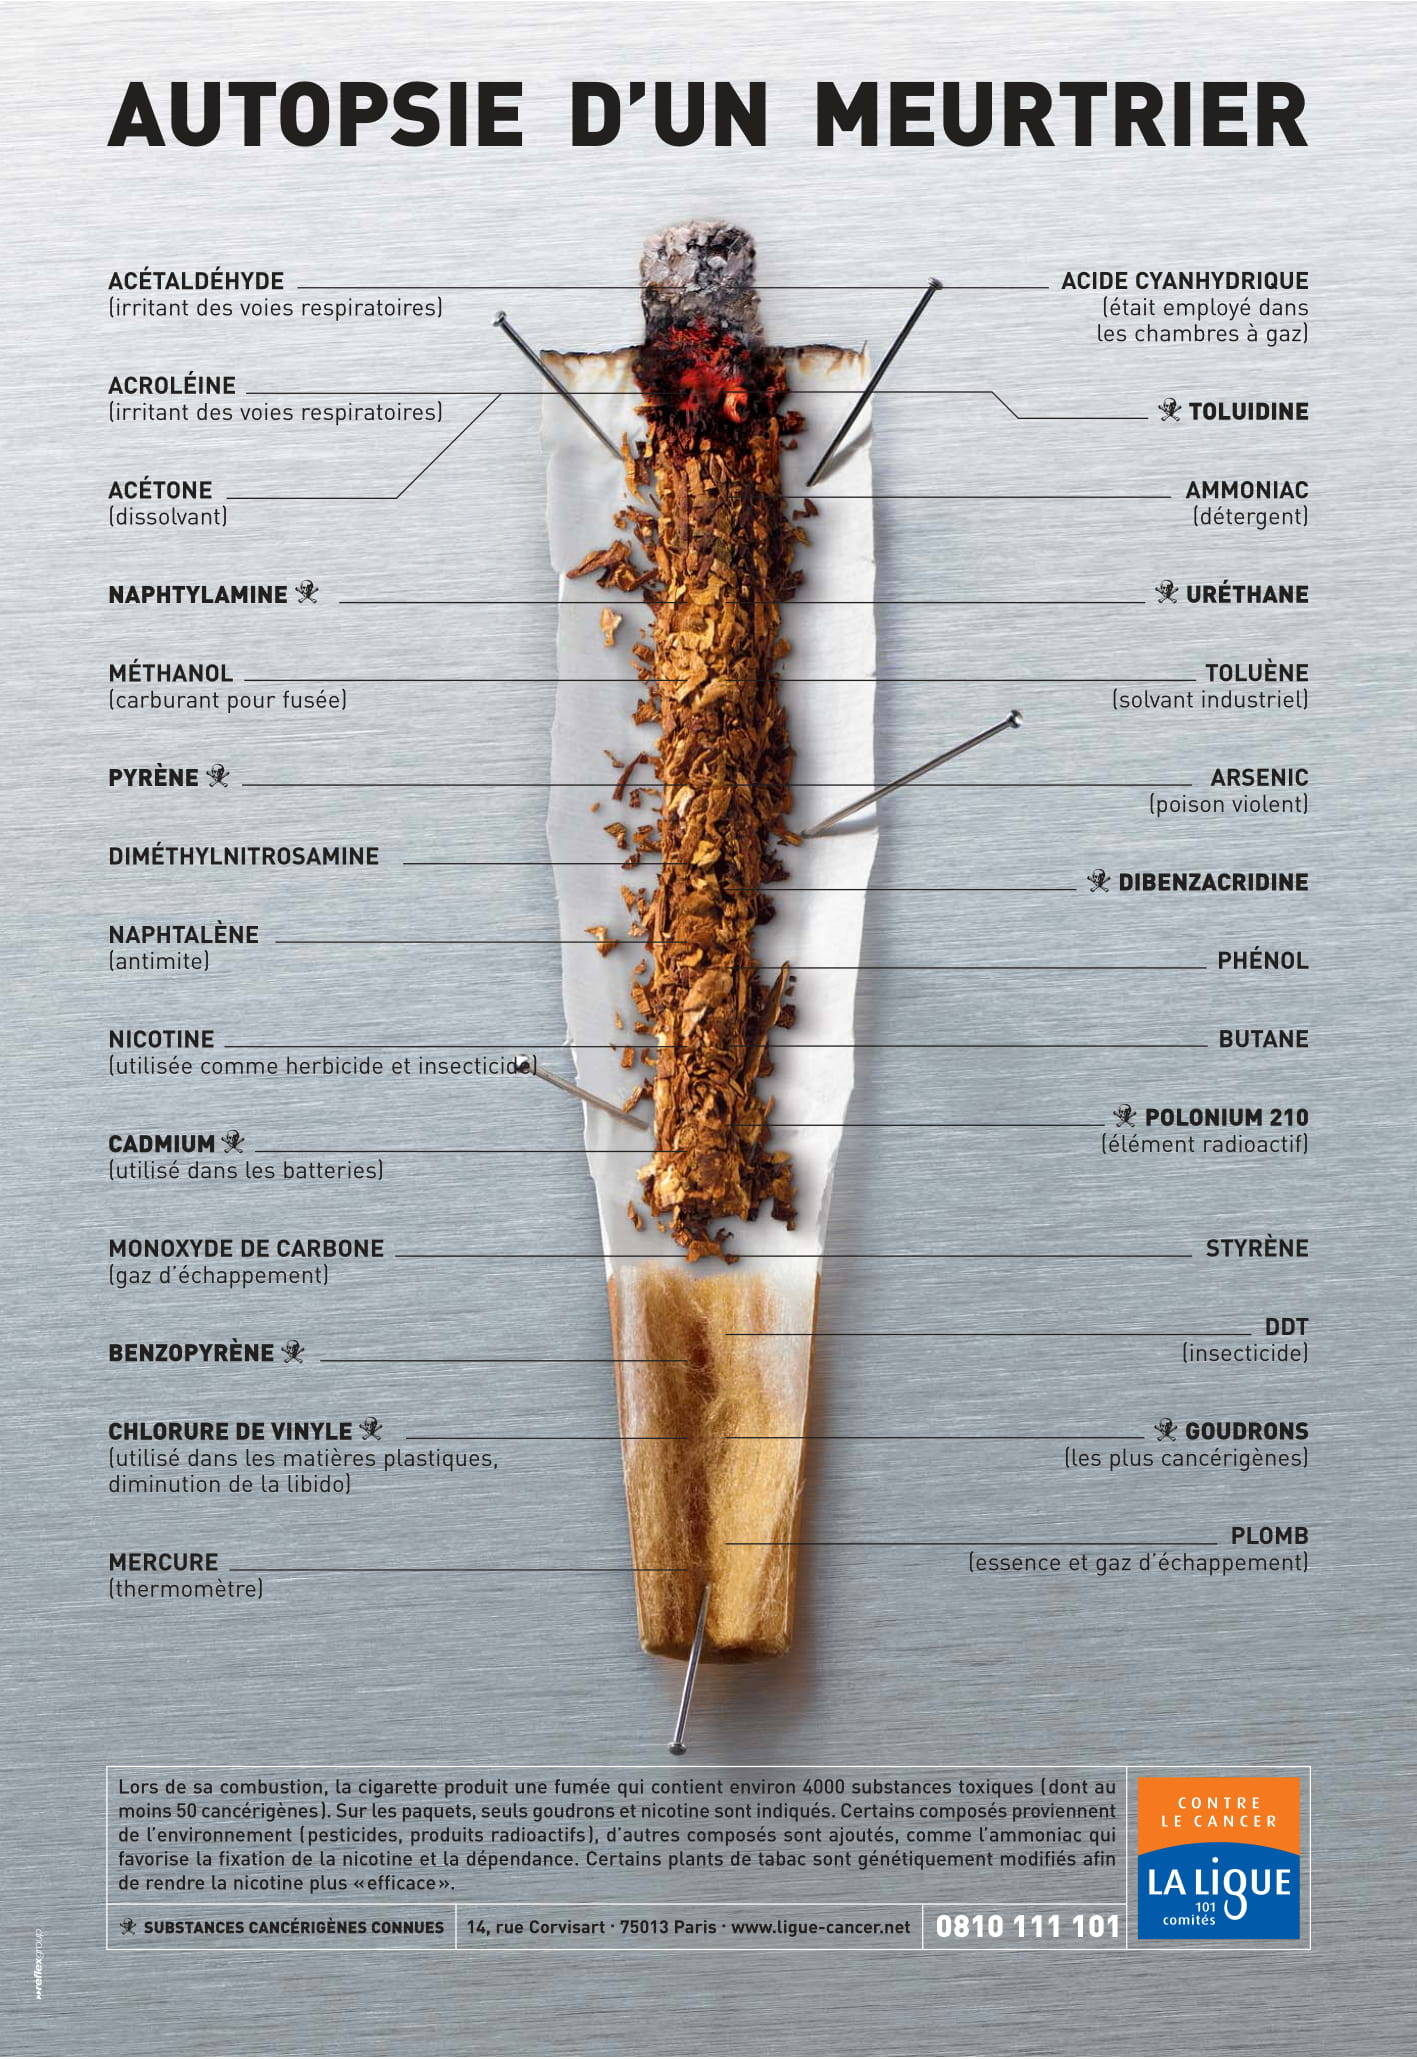 L’affiche « Autopsie d'un meurtrier » - Ligue nationale contre le cancer (2004) décline les différentes substances toxiques que produit la fumée d'une cigarette.